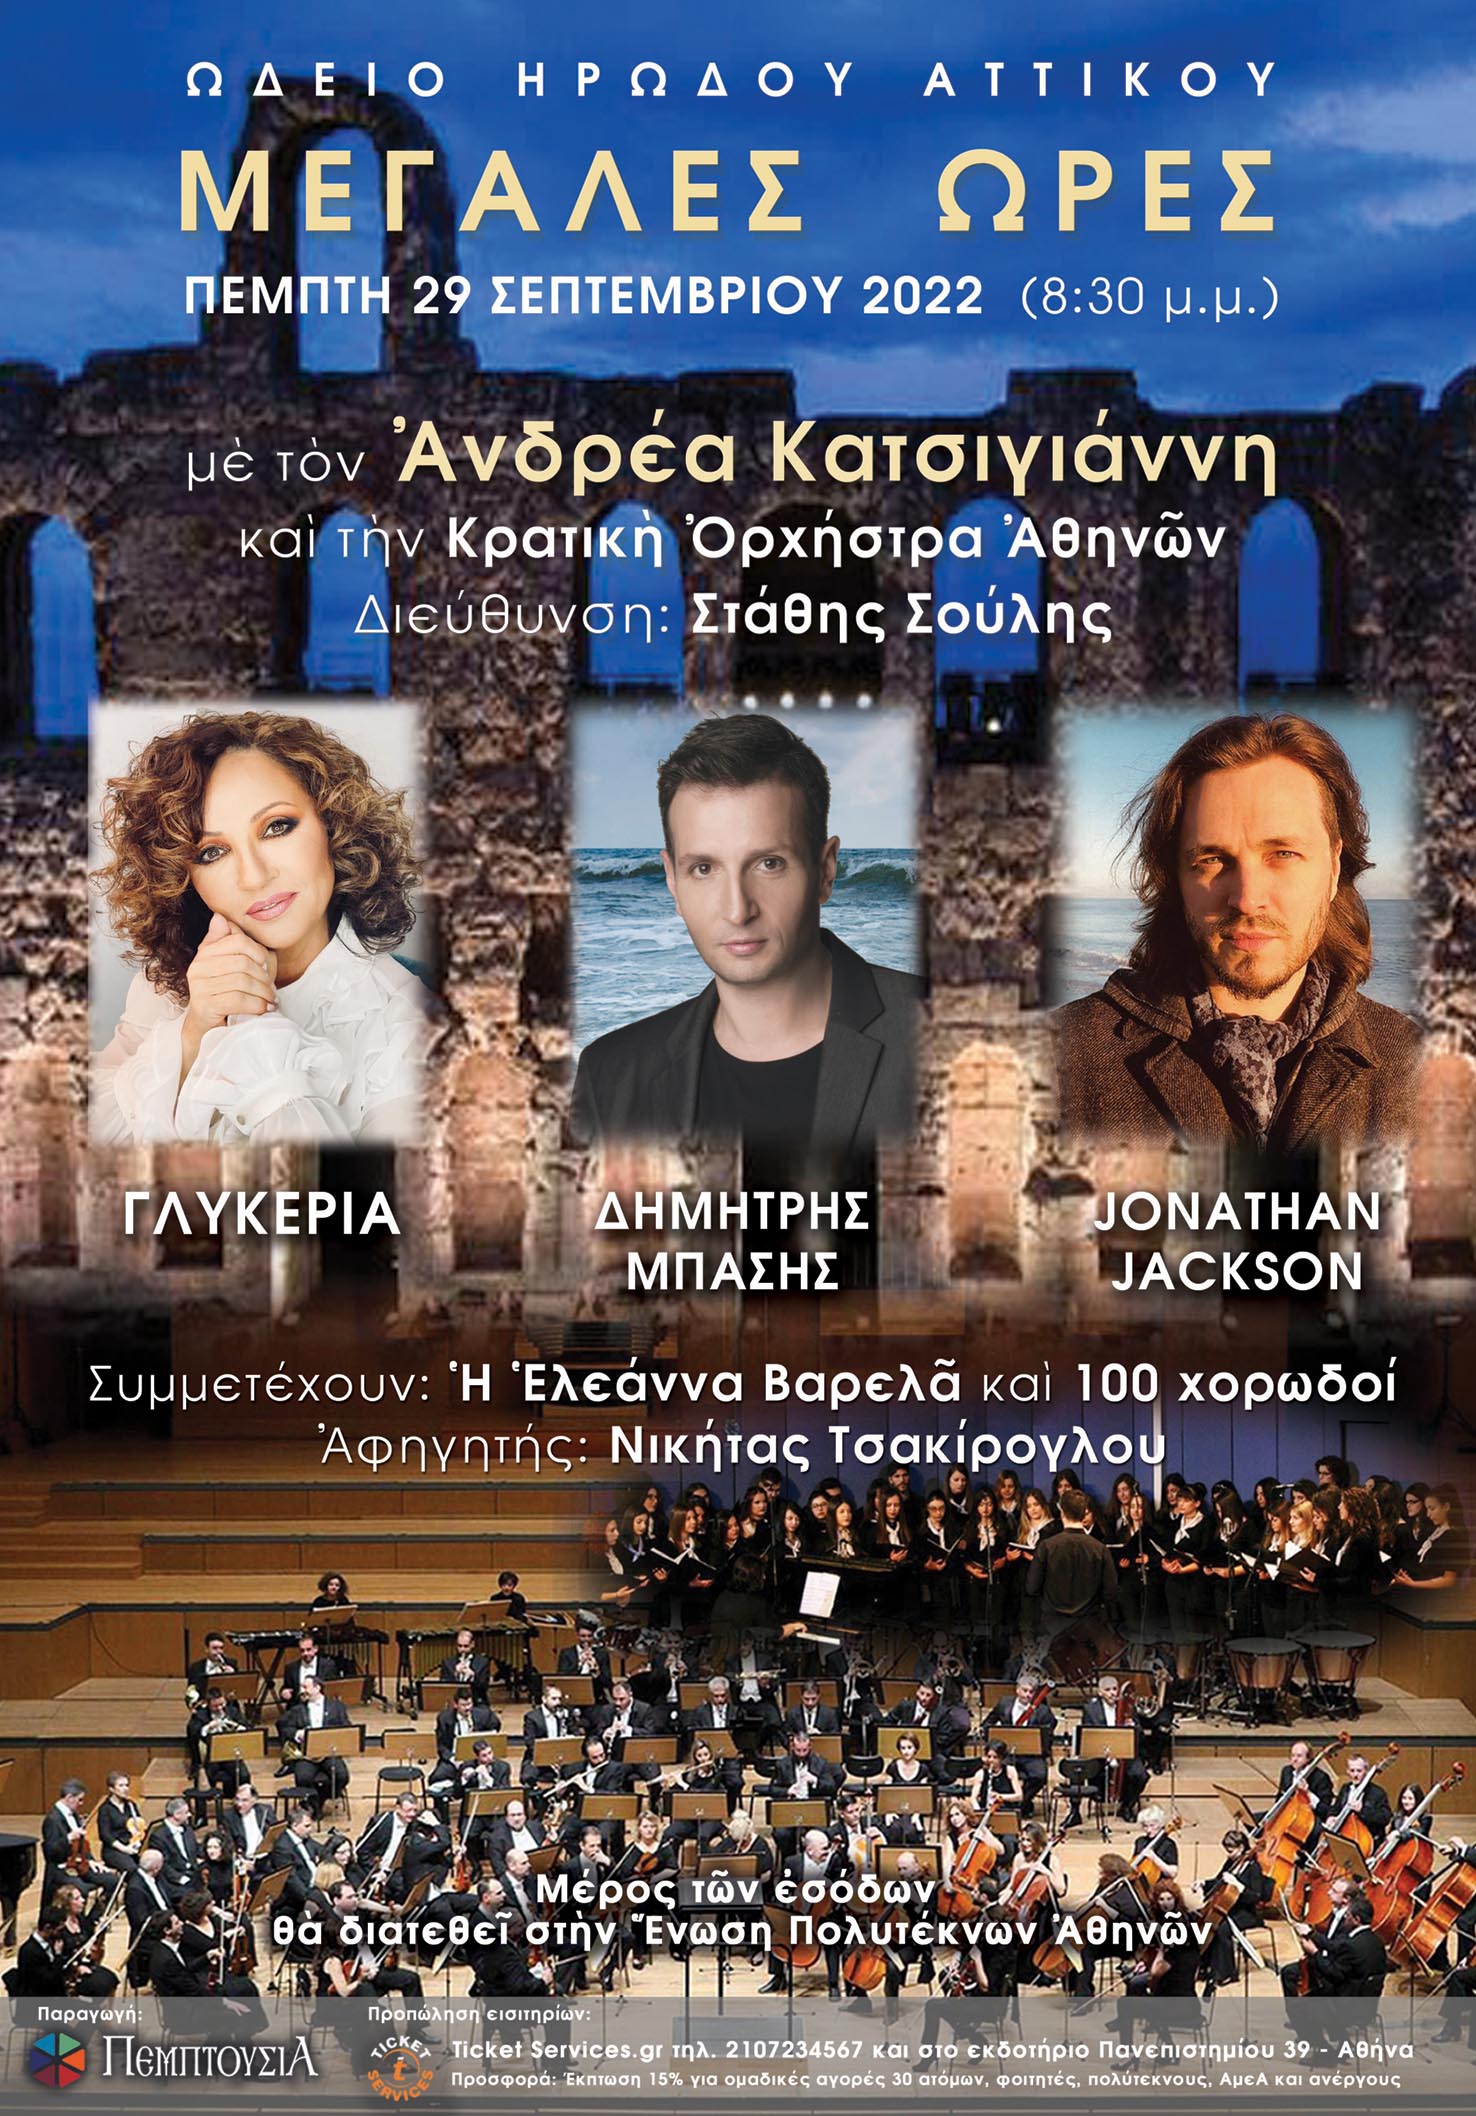 «ΜΕΓΑΛΕΣ ΩΡΕΣ»: Του συνθέτη Ανδρέα Κατσιγιάννη - Με την Κρατική Ορχήστρα Αθηνών